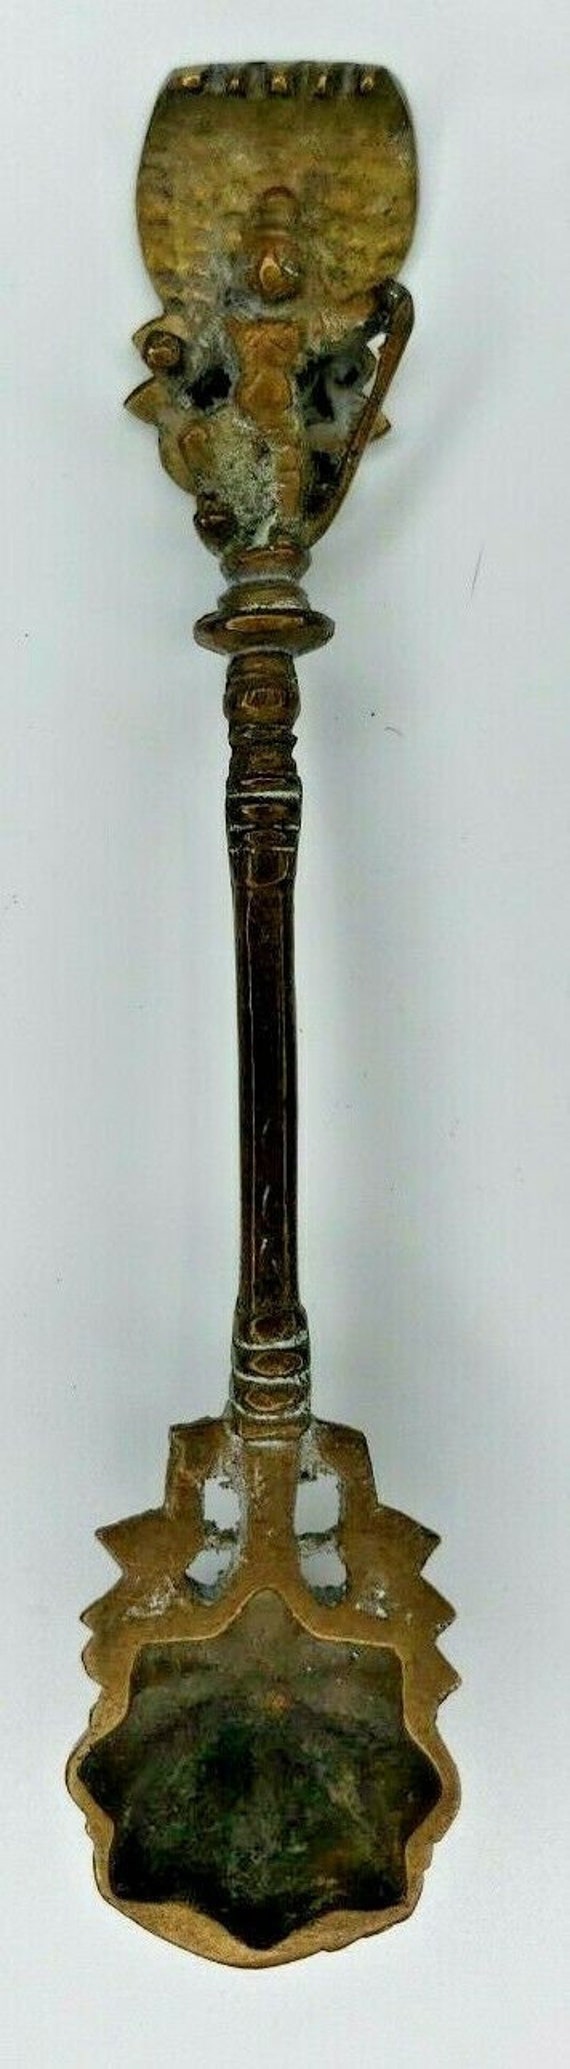 Antique brass asian incense burner ornate handle s